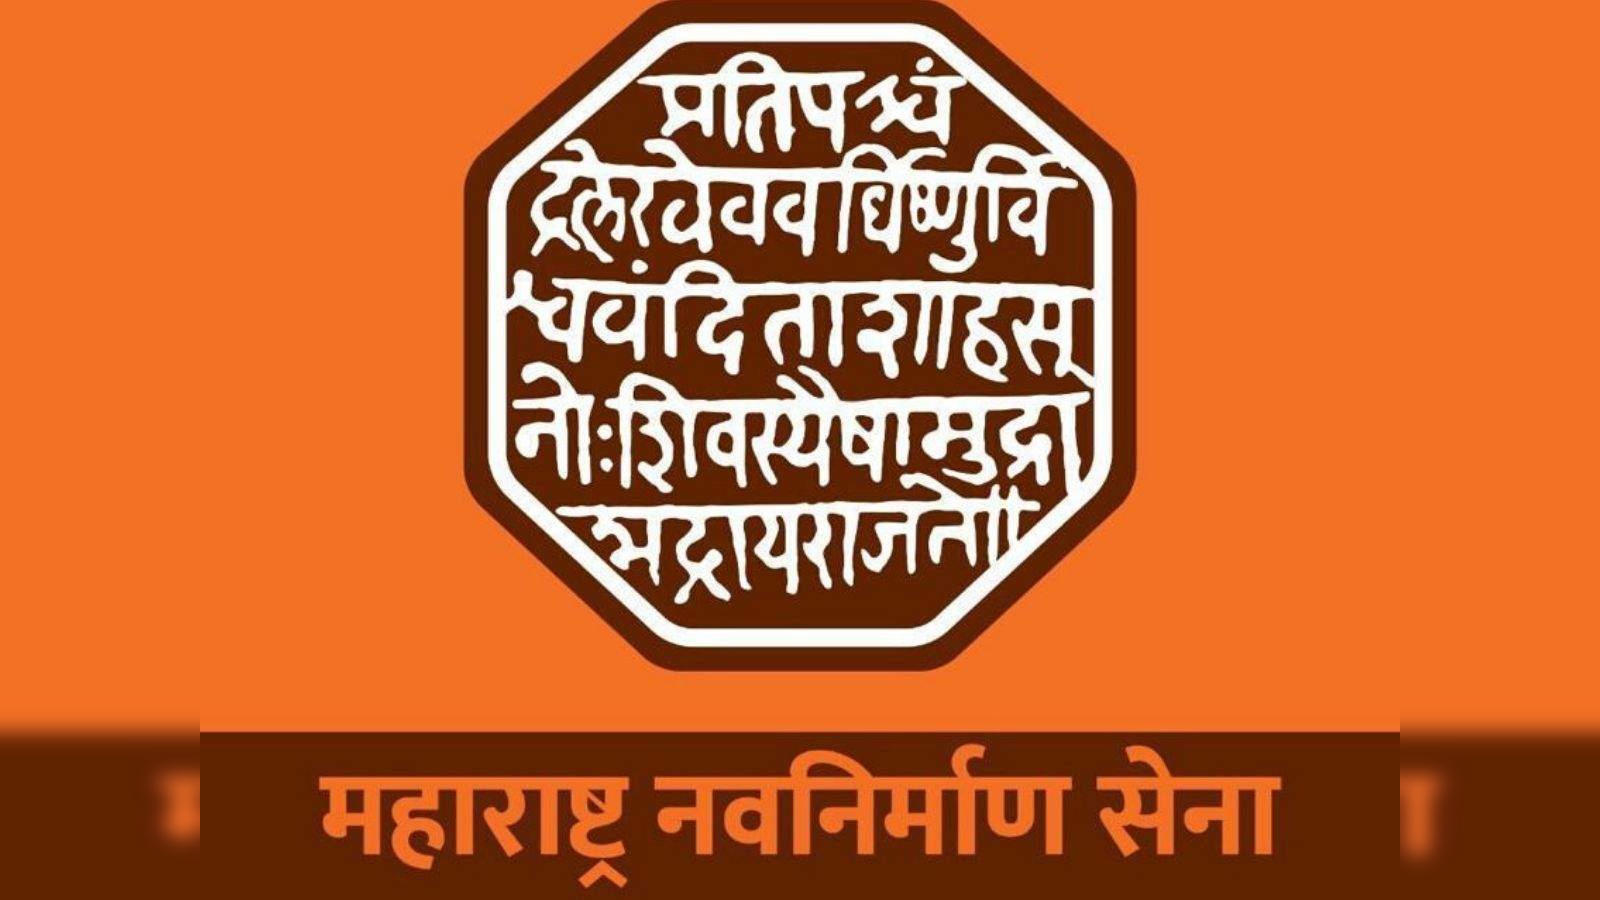 मध्यवर्ती कार्यकारी समिती | Maharashtra Navnirman Sena